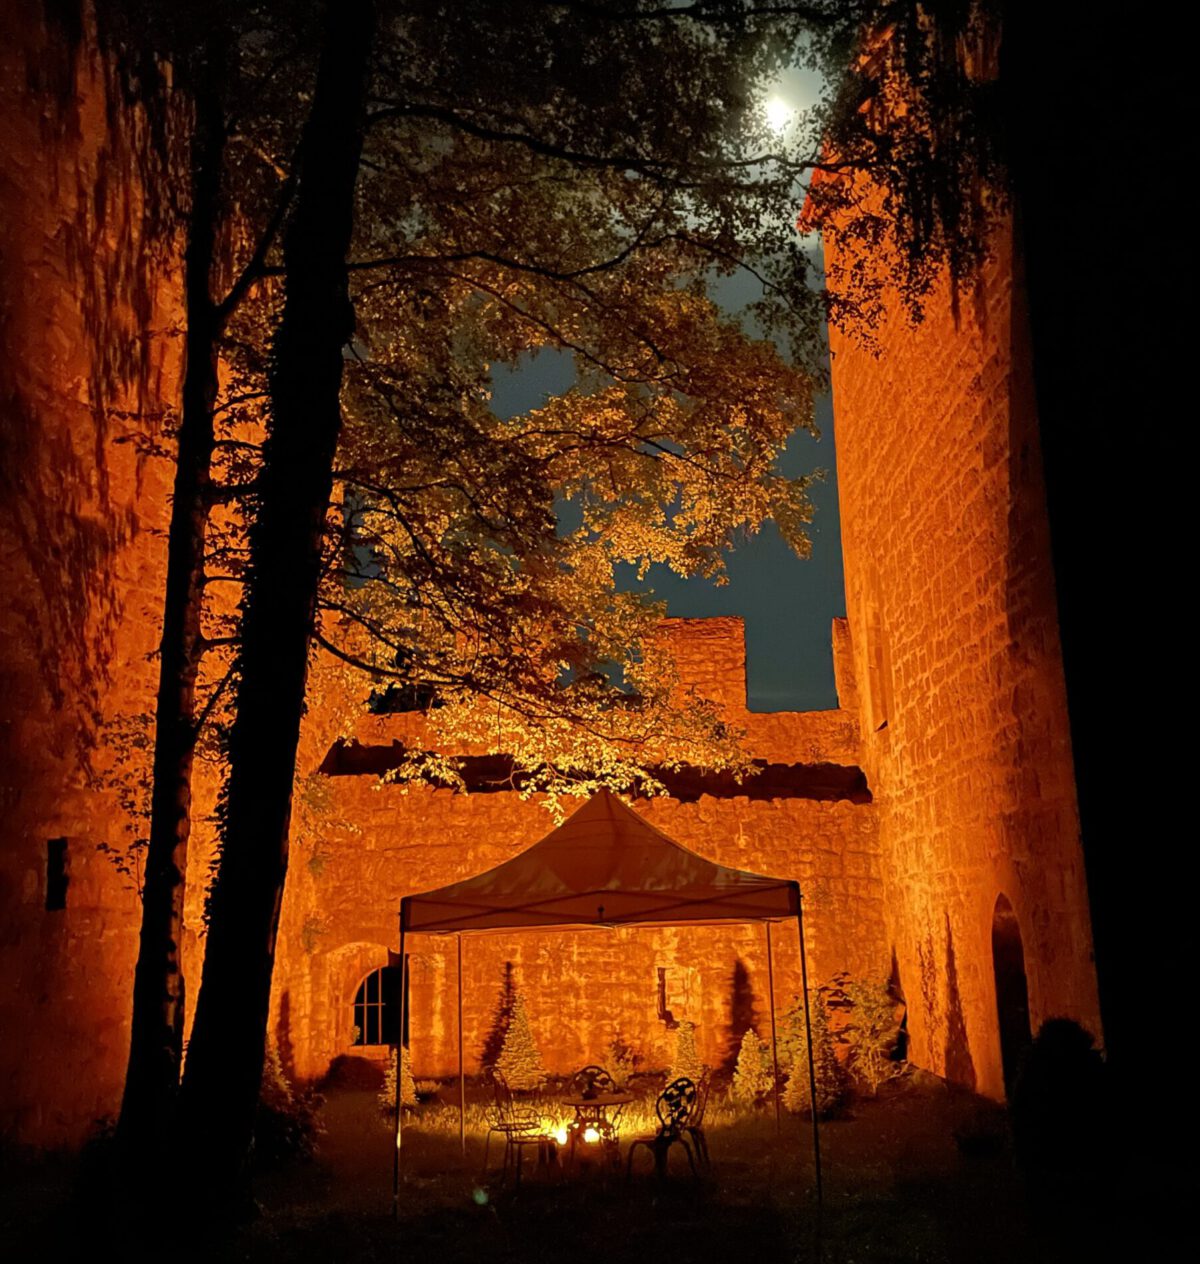 Brende'scher Hof bei Nacht